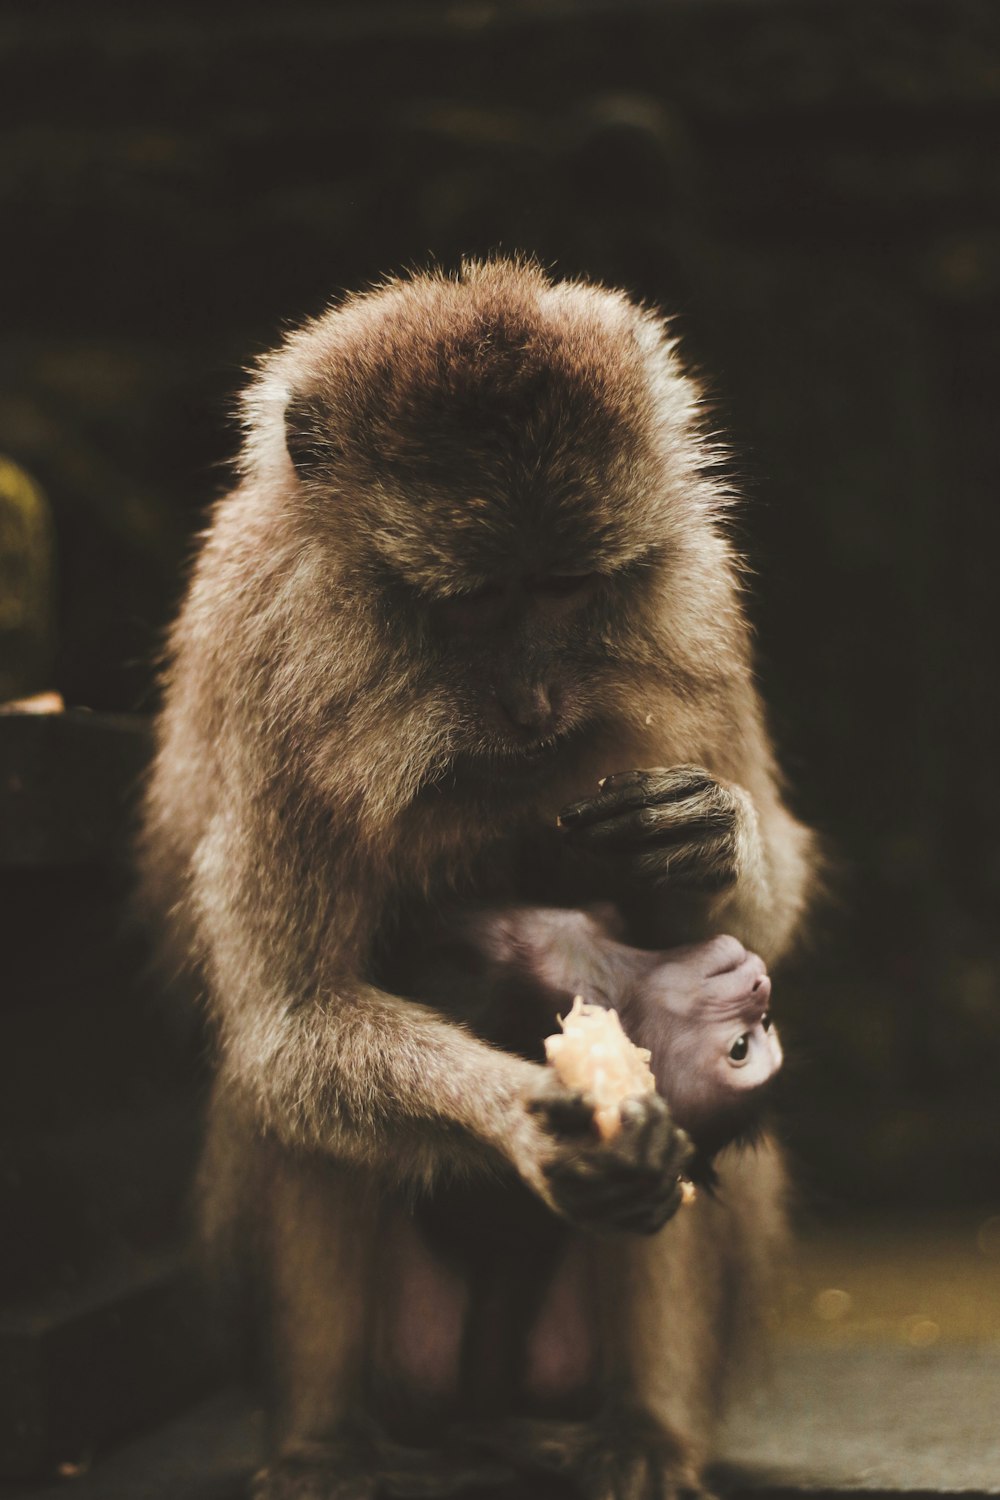 먹이를 들고 있는 원숭이